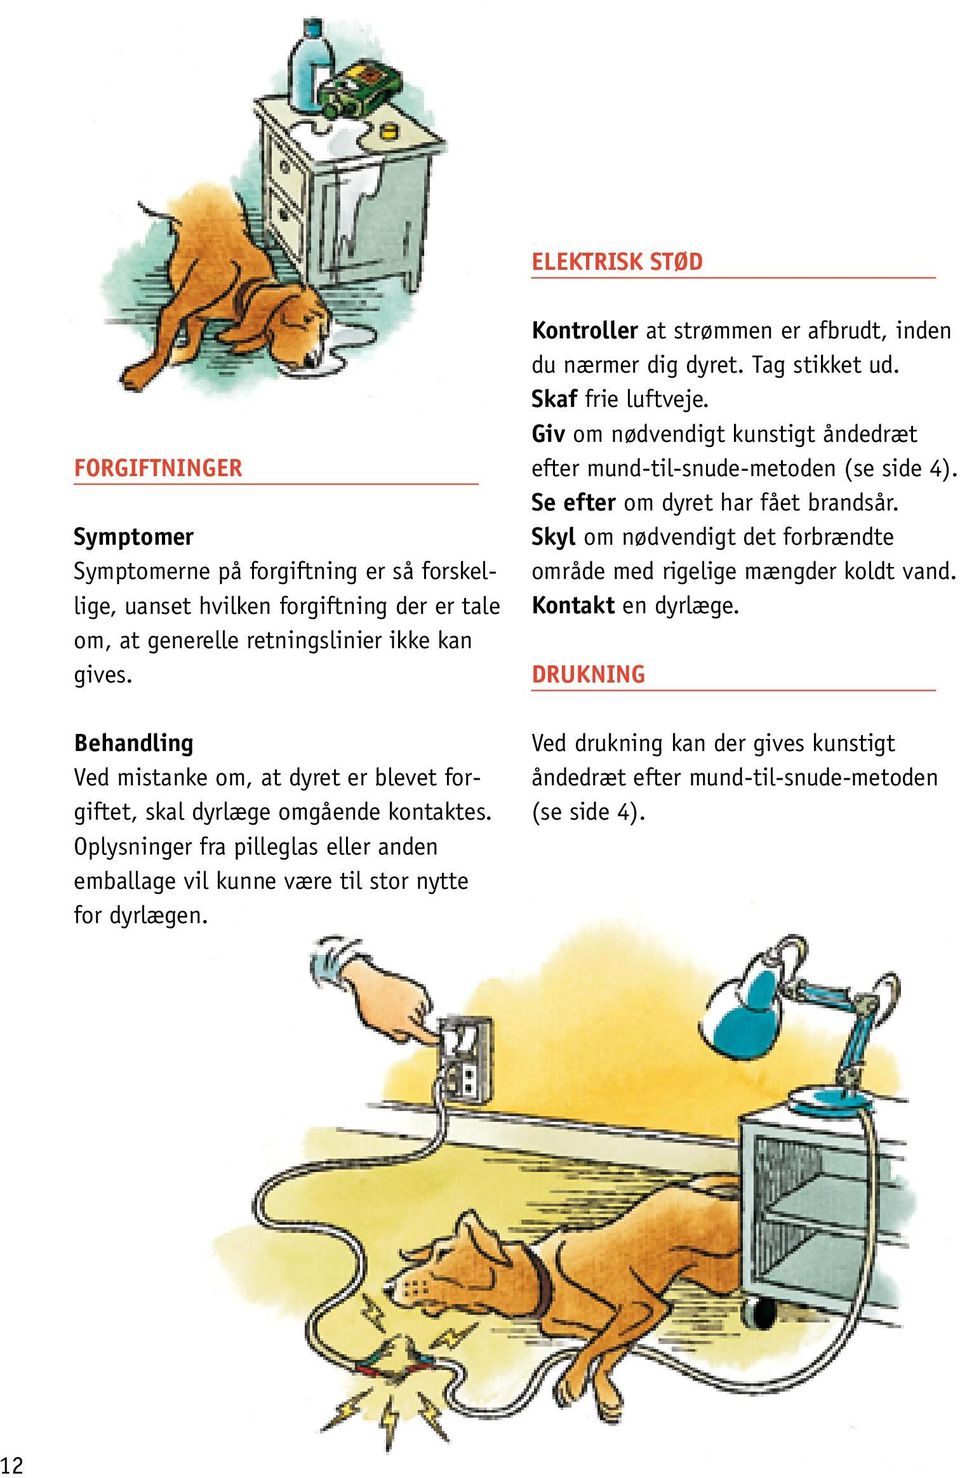 Kontroller at strømmen er afbrudt, inden du nærmer dig dyret. Tag stikket ud. Skaf frie luftveje. Giv om nødvendigt kunstigt åndedræt efter mund-til-snude-metoden (se side 4).